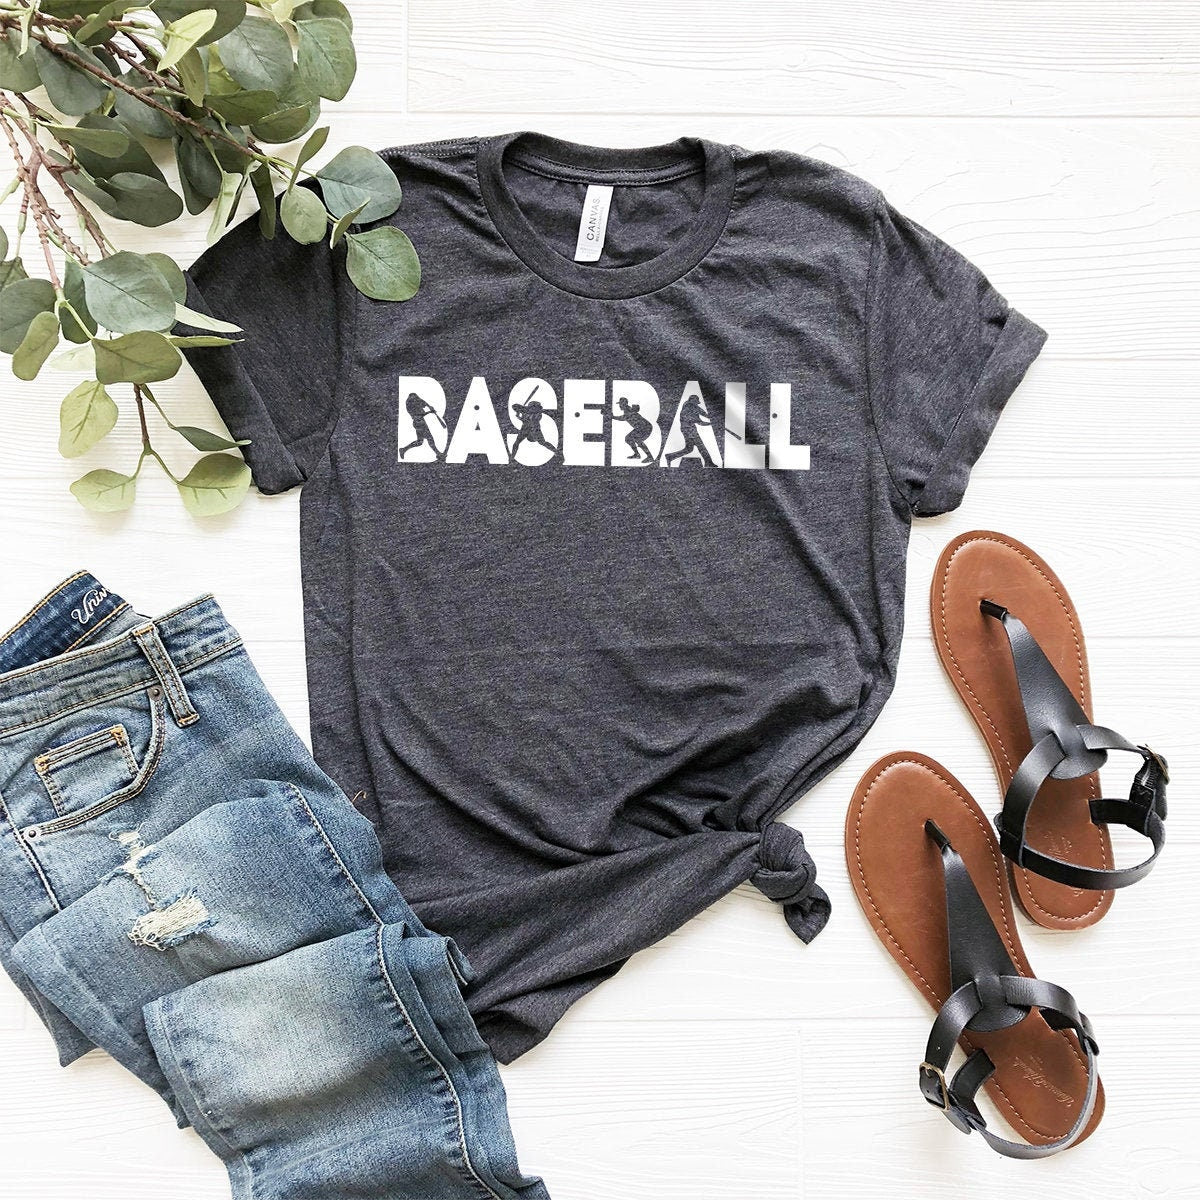 Baseball Player Shirt, Baseball Shirt, Baseball Lover Gift, Baseball Fan Tee, Baseball Life Shirt, Baseball Tee, Baseball Gifts - Fastdeliverytees.com